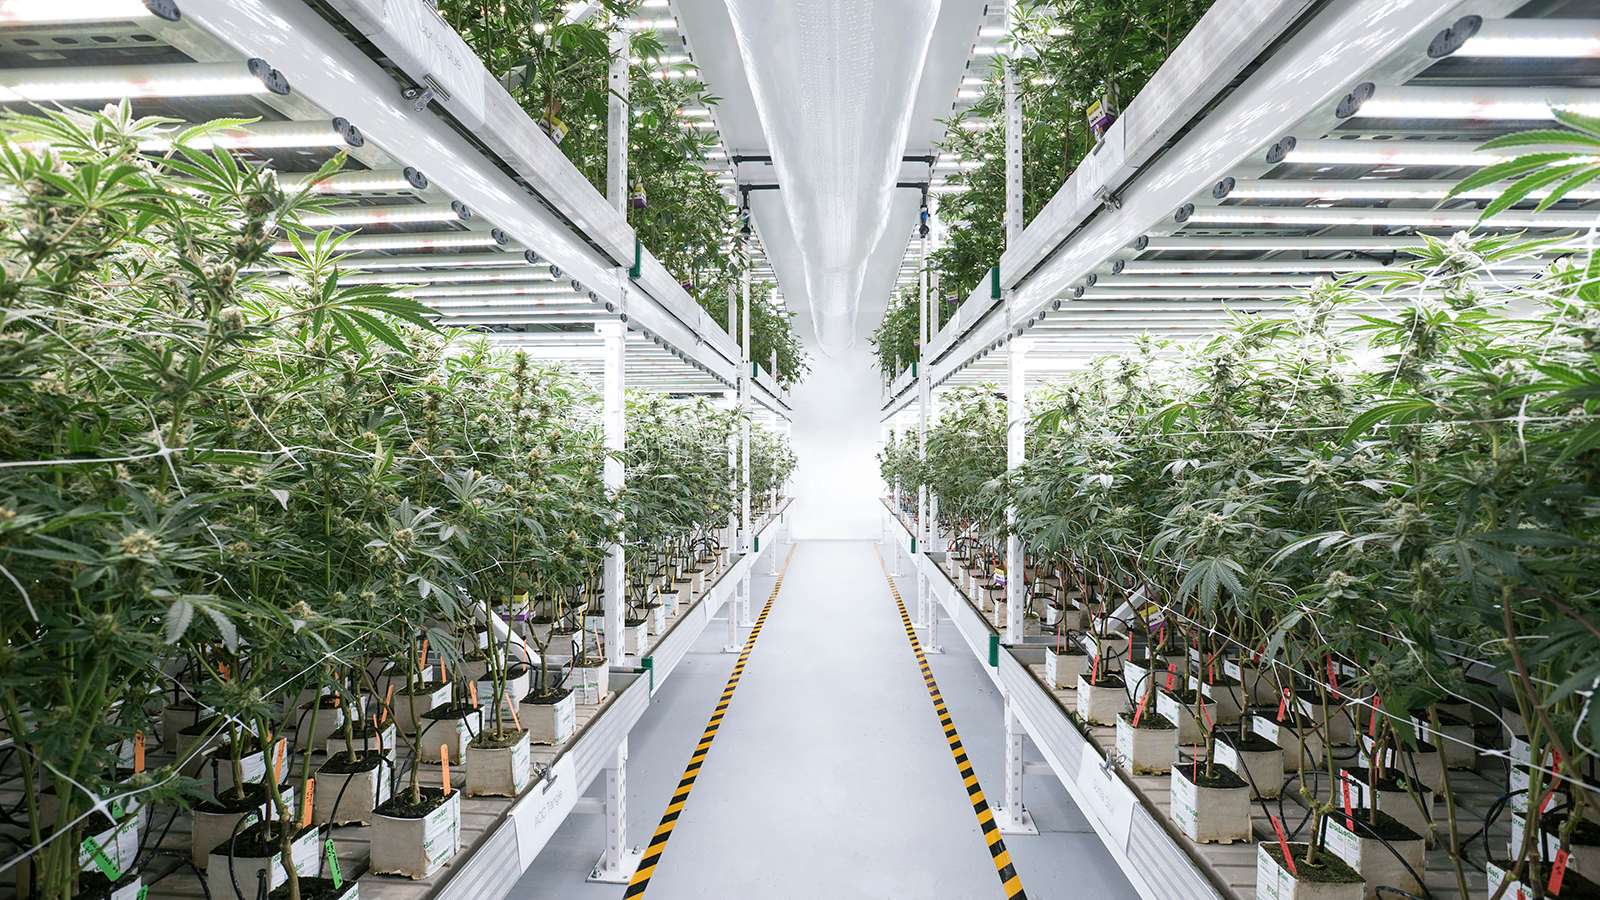 Inside a grow room, a walkway surrounded by marijuana plants